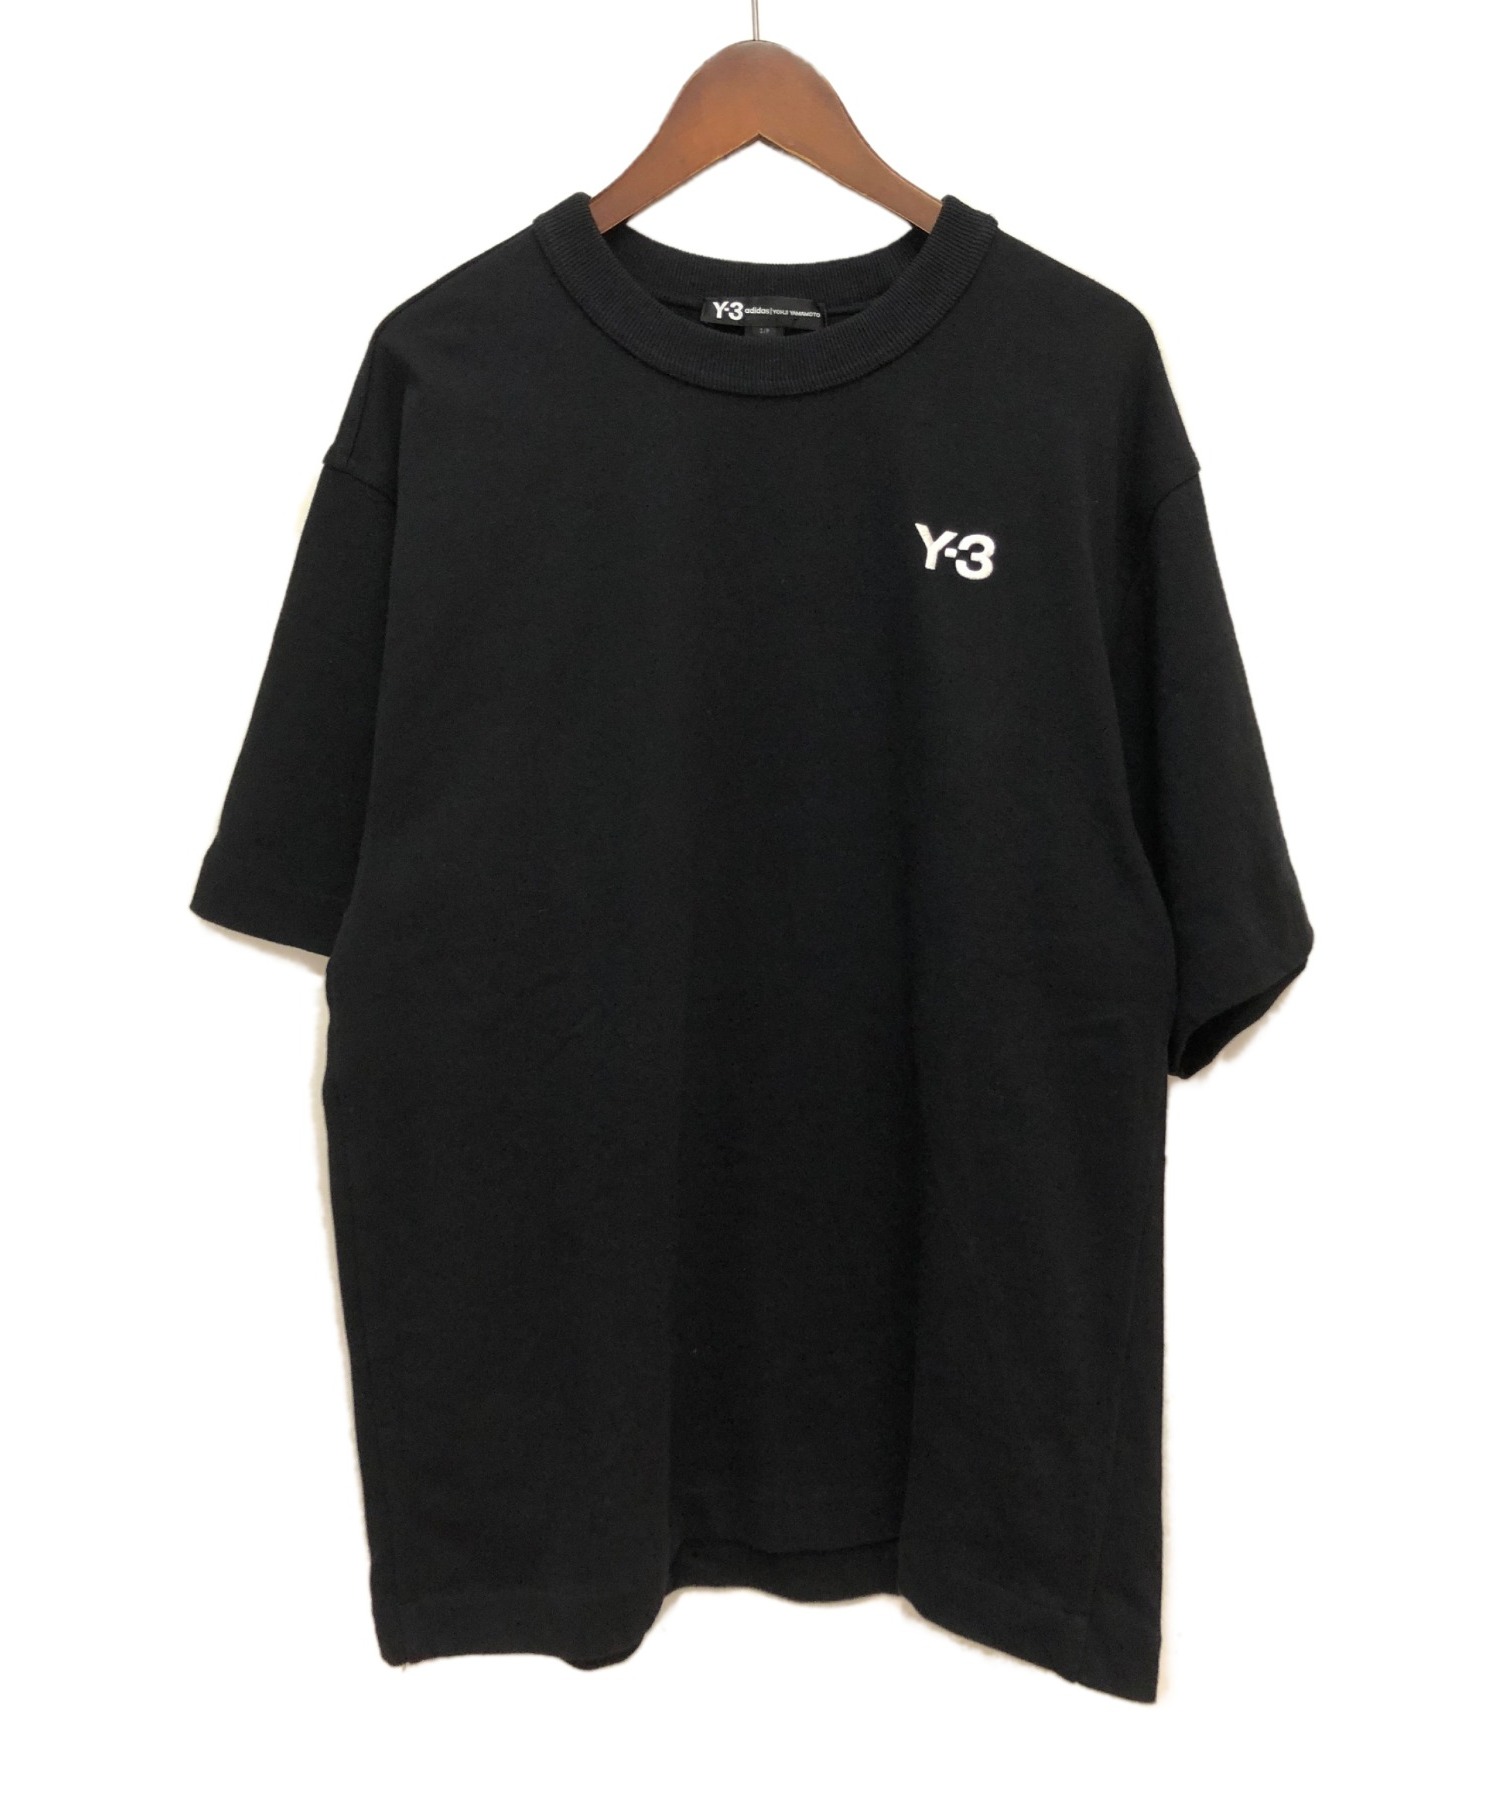 Y-3 (ワイスリー) 20SS オーバーサイズヘビーウェイトTシャツ ブラック サイズ:S